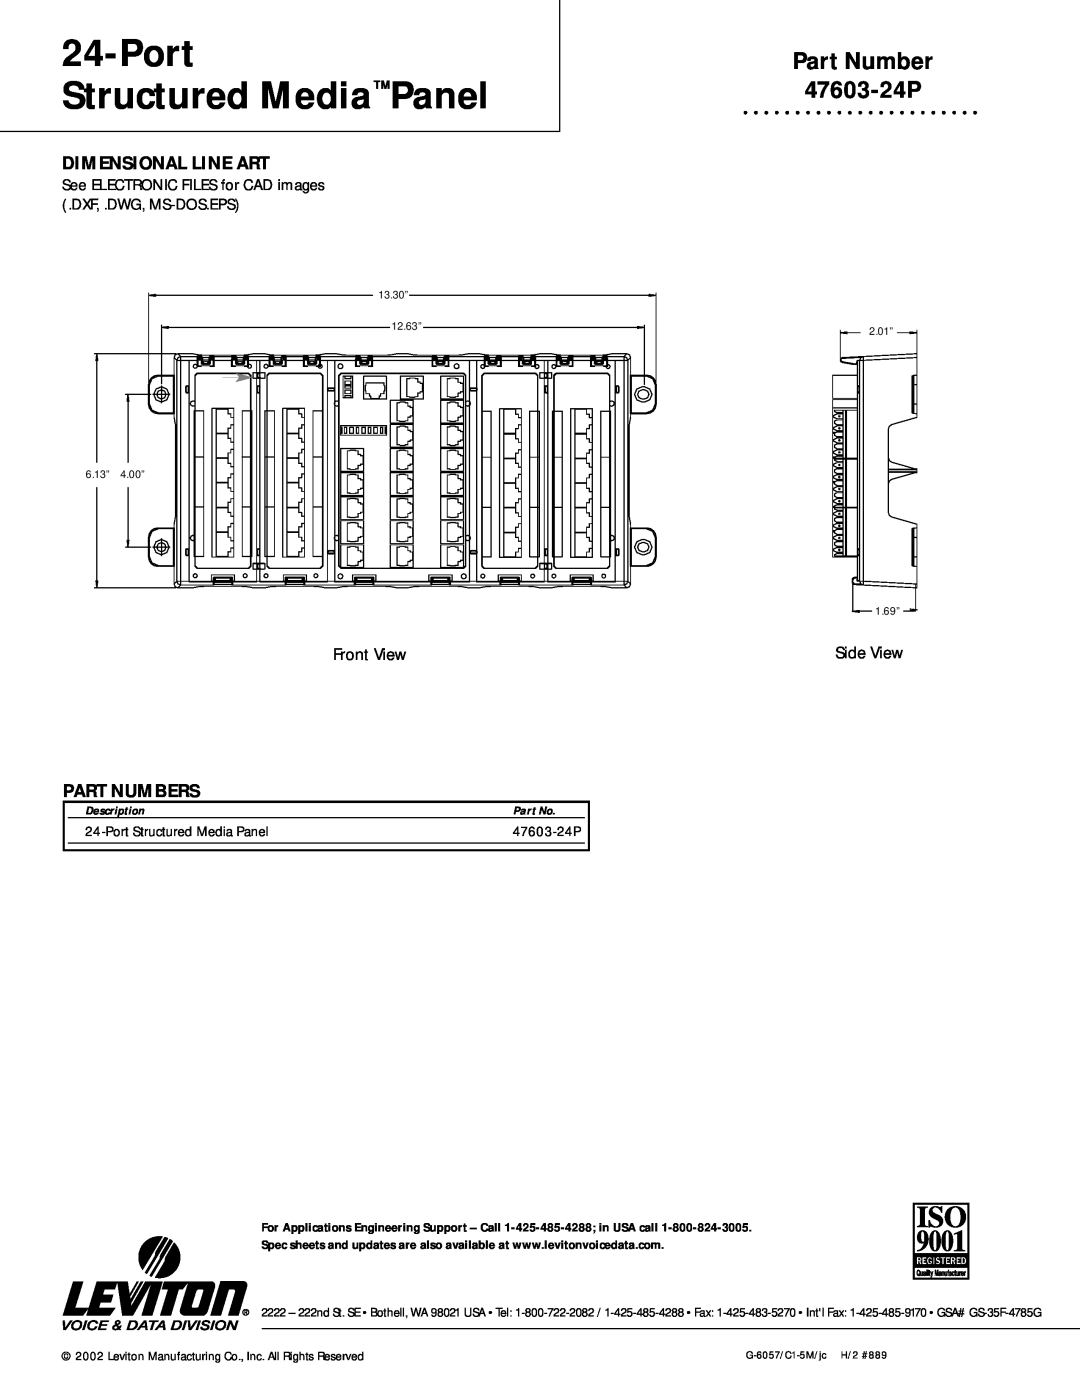 Leviton warranty Part Number 47603-24P, Dimensional Line Art, Part Numbers, Port Structured Media Panel, Description 